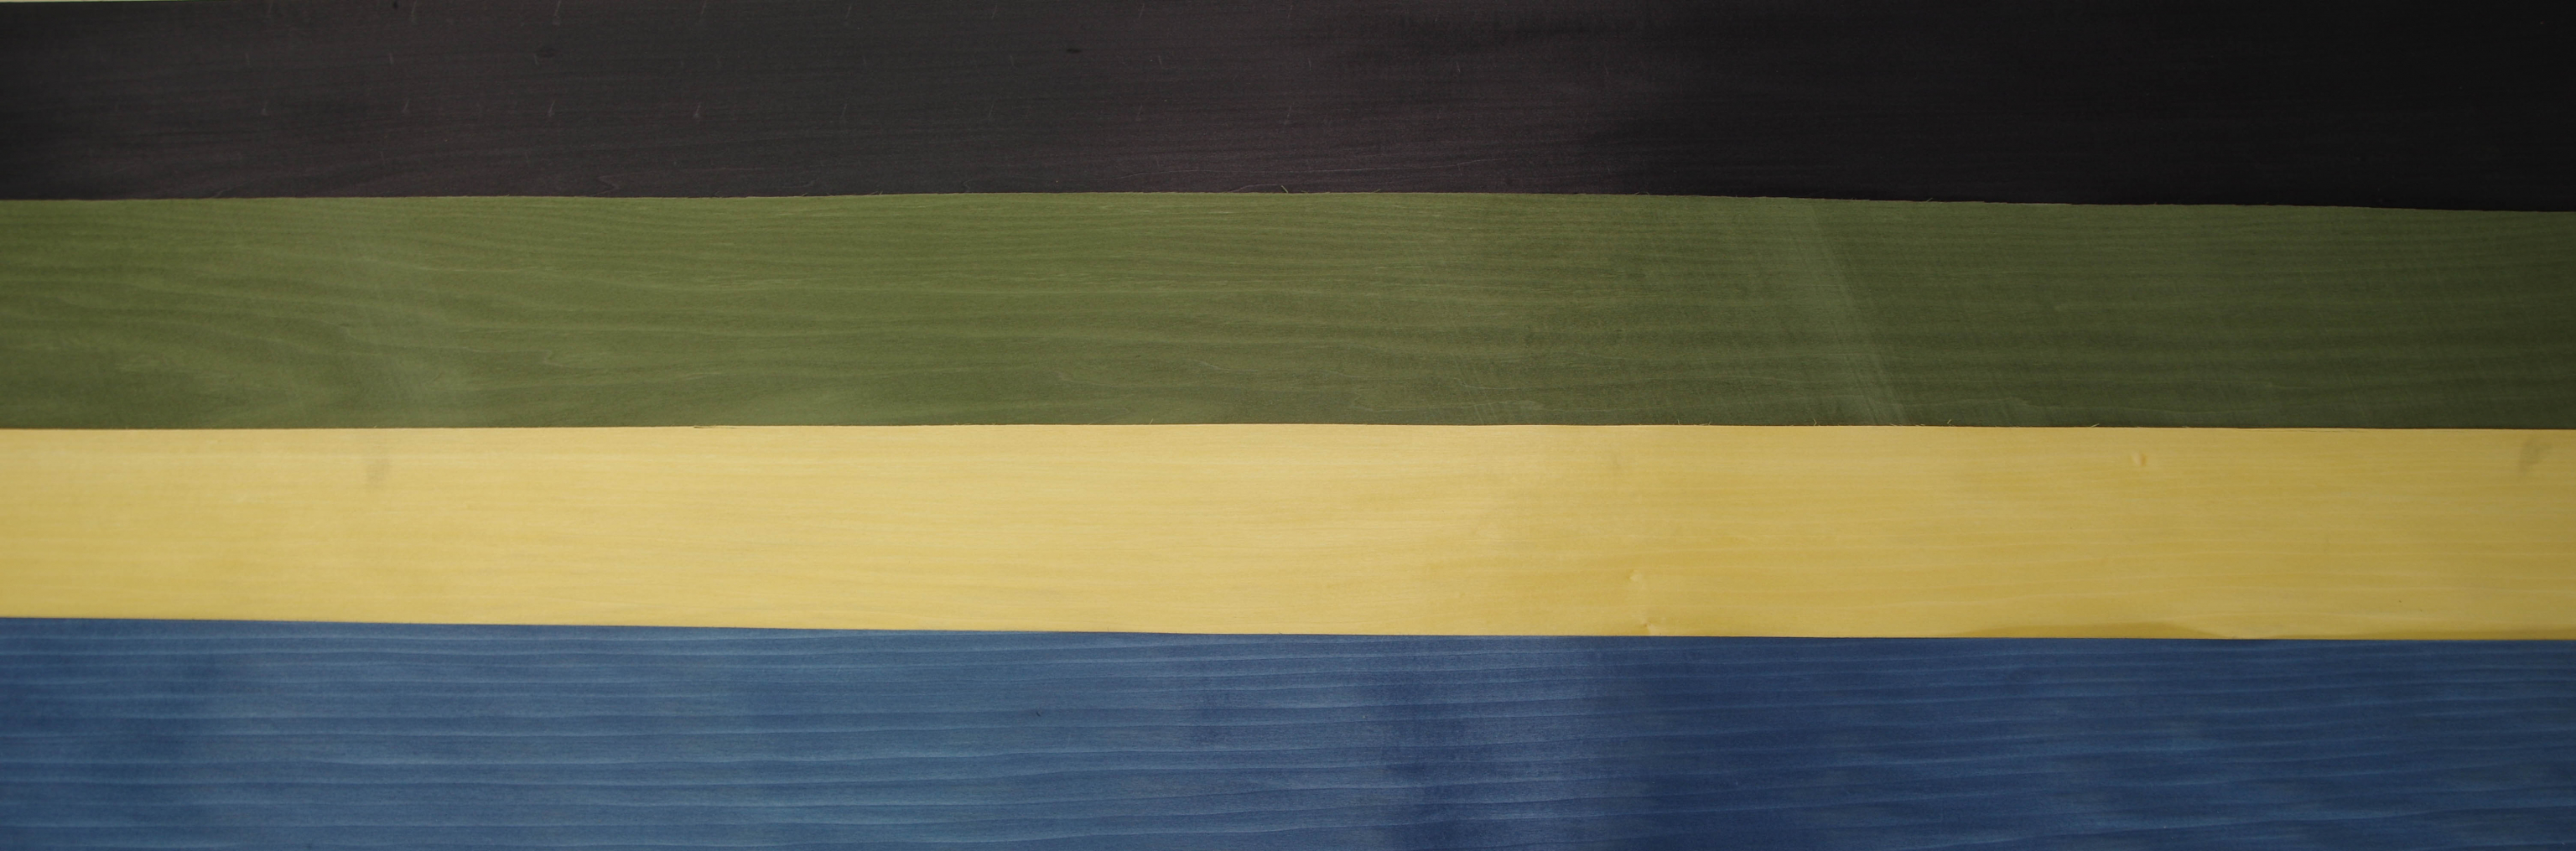 Tulpenbaum 1,01m² blau / 0,97m² gelb / 0,9m² grün /3,08 schwarz gefärbtes-Furnier 5.96m²